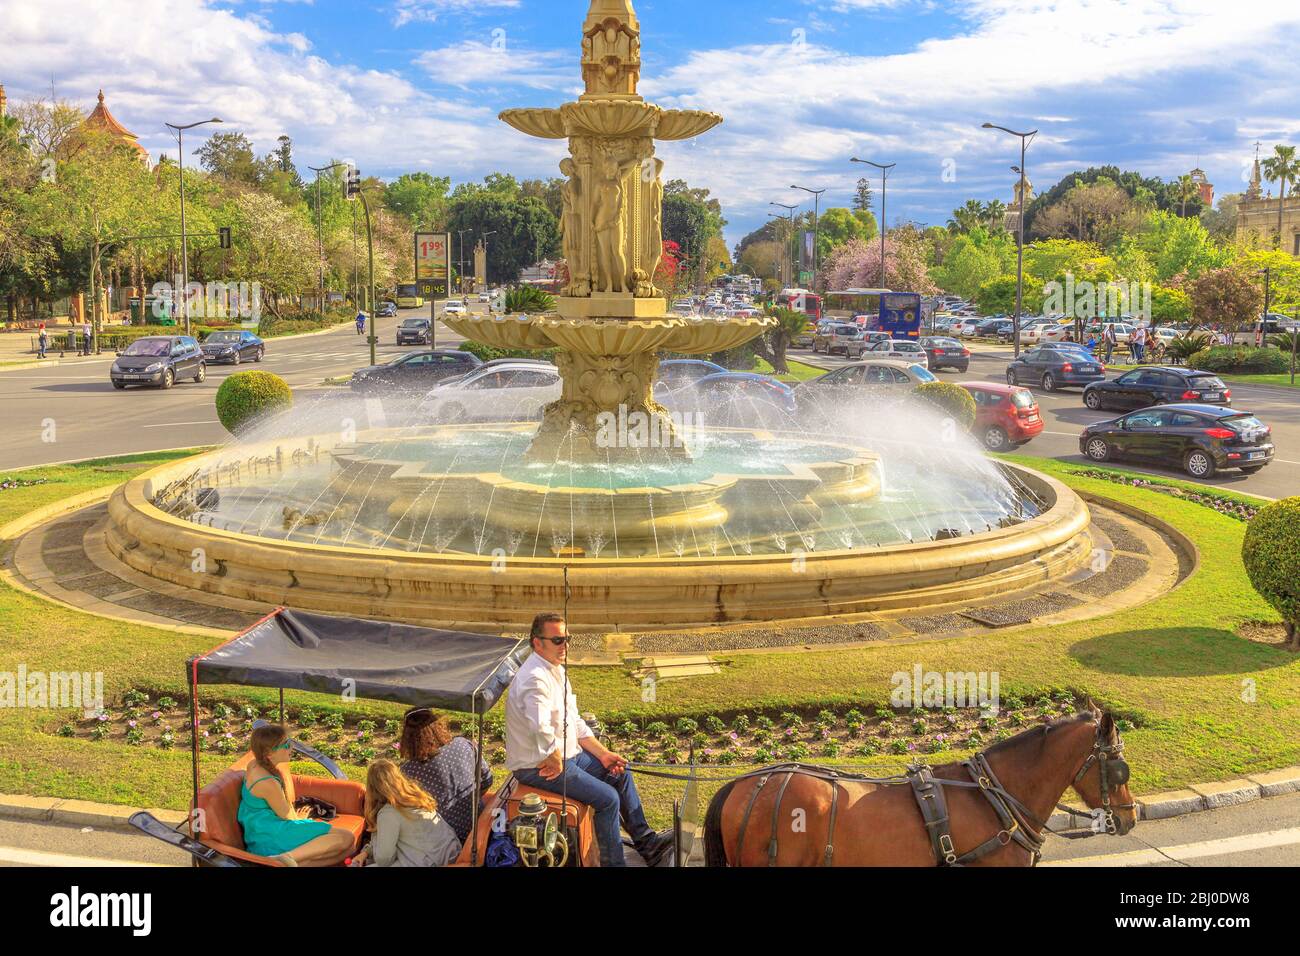 Siviglia, Andalusia, Spagna - 19 aprile 2016: Primo piano di un giro in carrozza a cavallo intorno alla fontana in Piazza Don Juan de Austria. Paesaggio urbano da Foto Stock